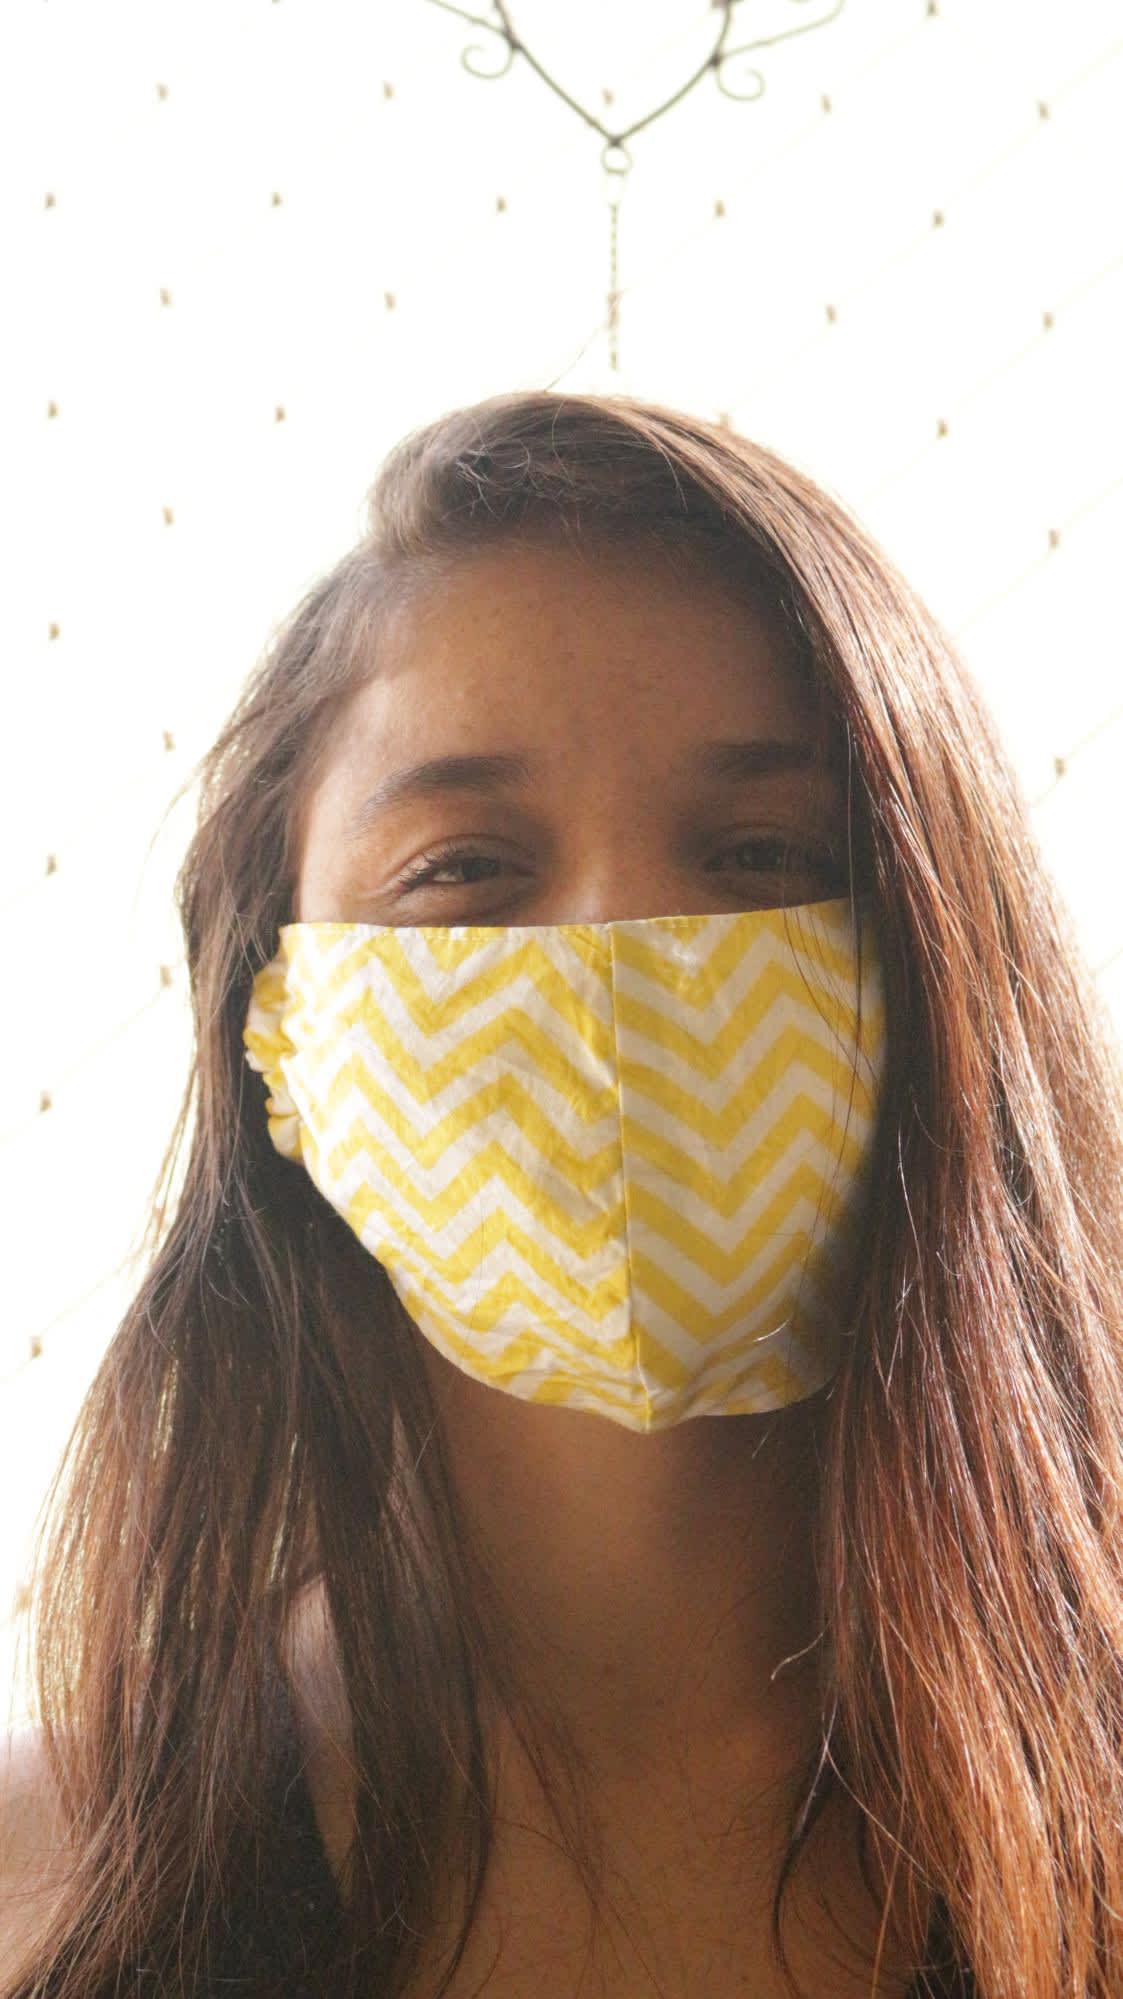 Woman wearing yellow mask